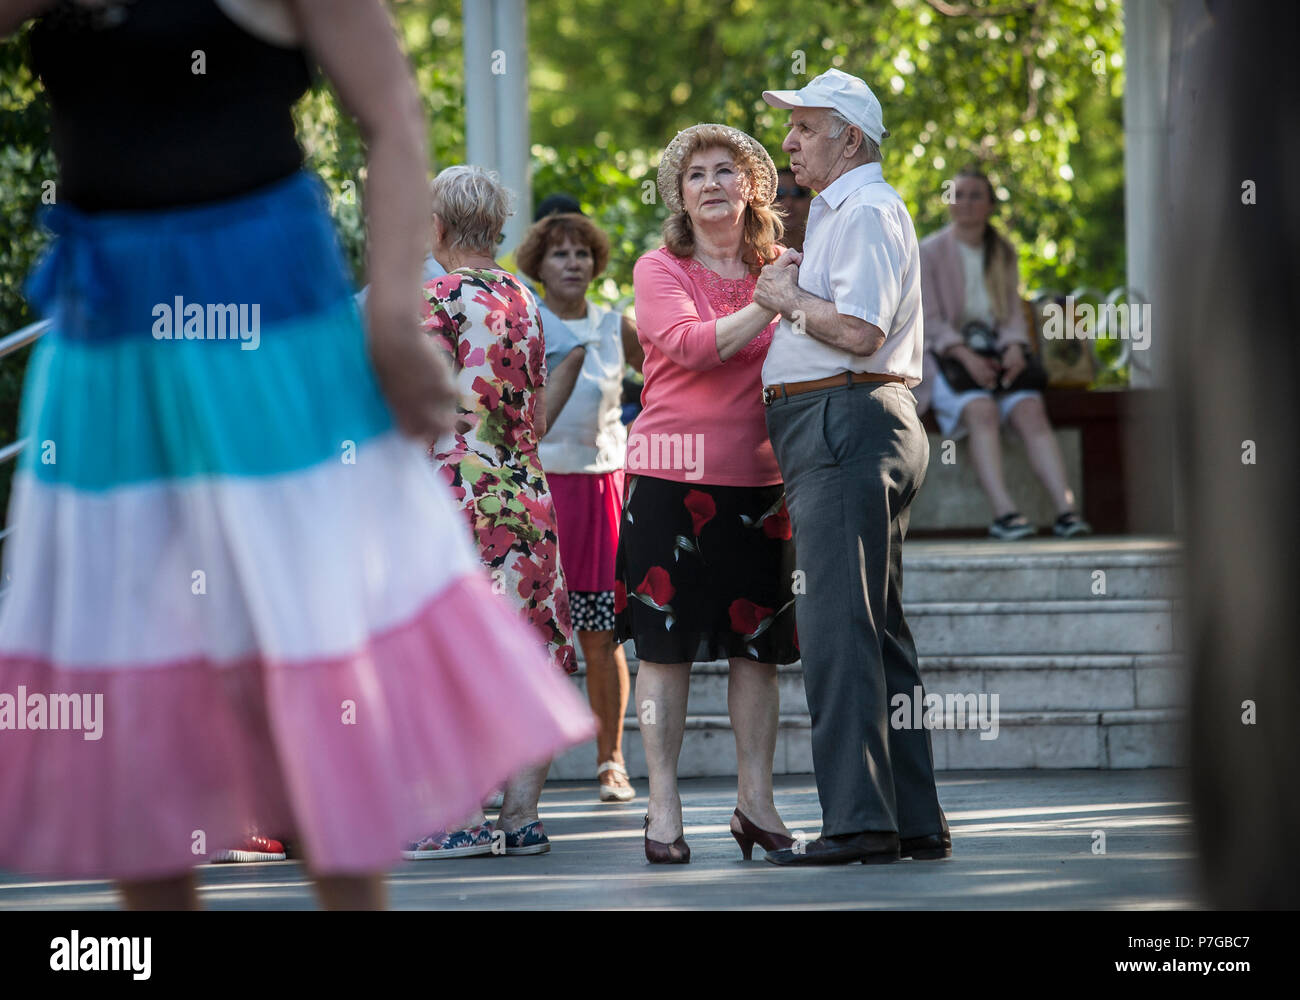 Ältere Menschen tanzen im Sokolniki Park in Moskau, Russland. Viele Parks in Moskau einen Platz haben, wo Rentner und andere Treffen und Tanzen. Stockfoto